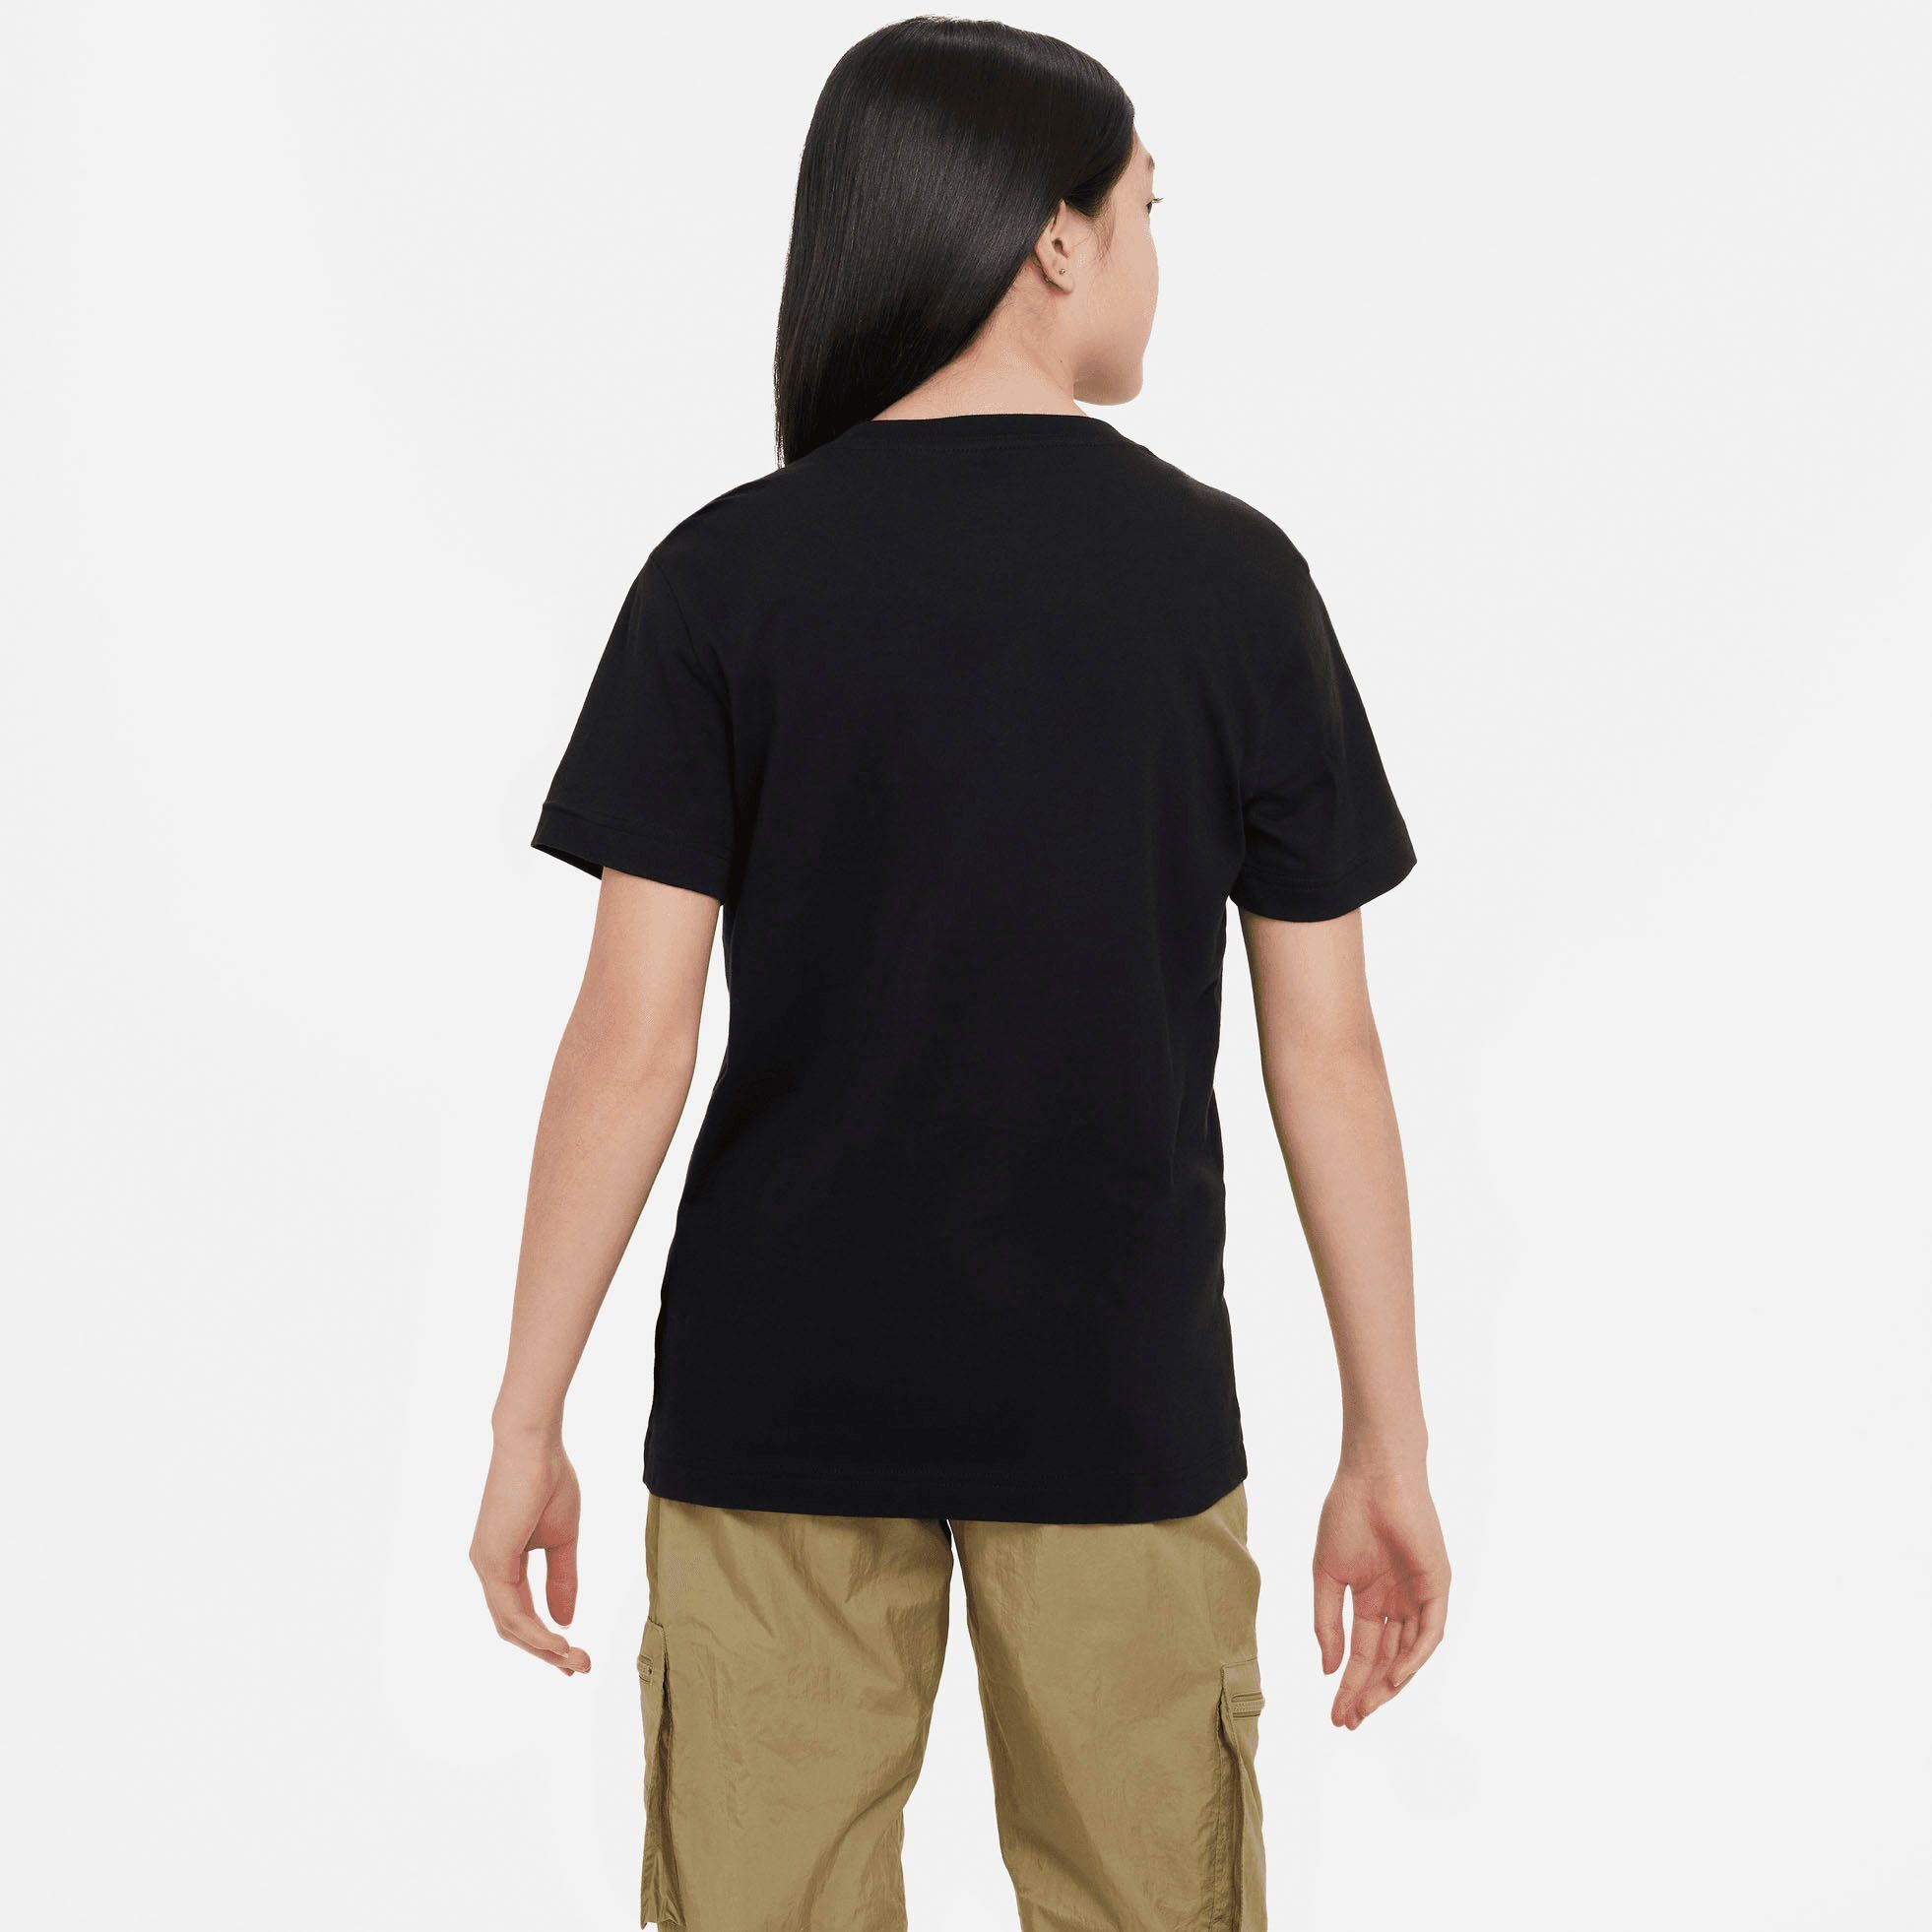 KIDS' (GIRLS) BIG T-SHIRT Nike schwarz T-Shirt Sportswear